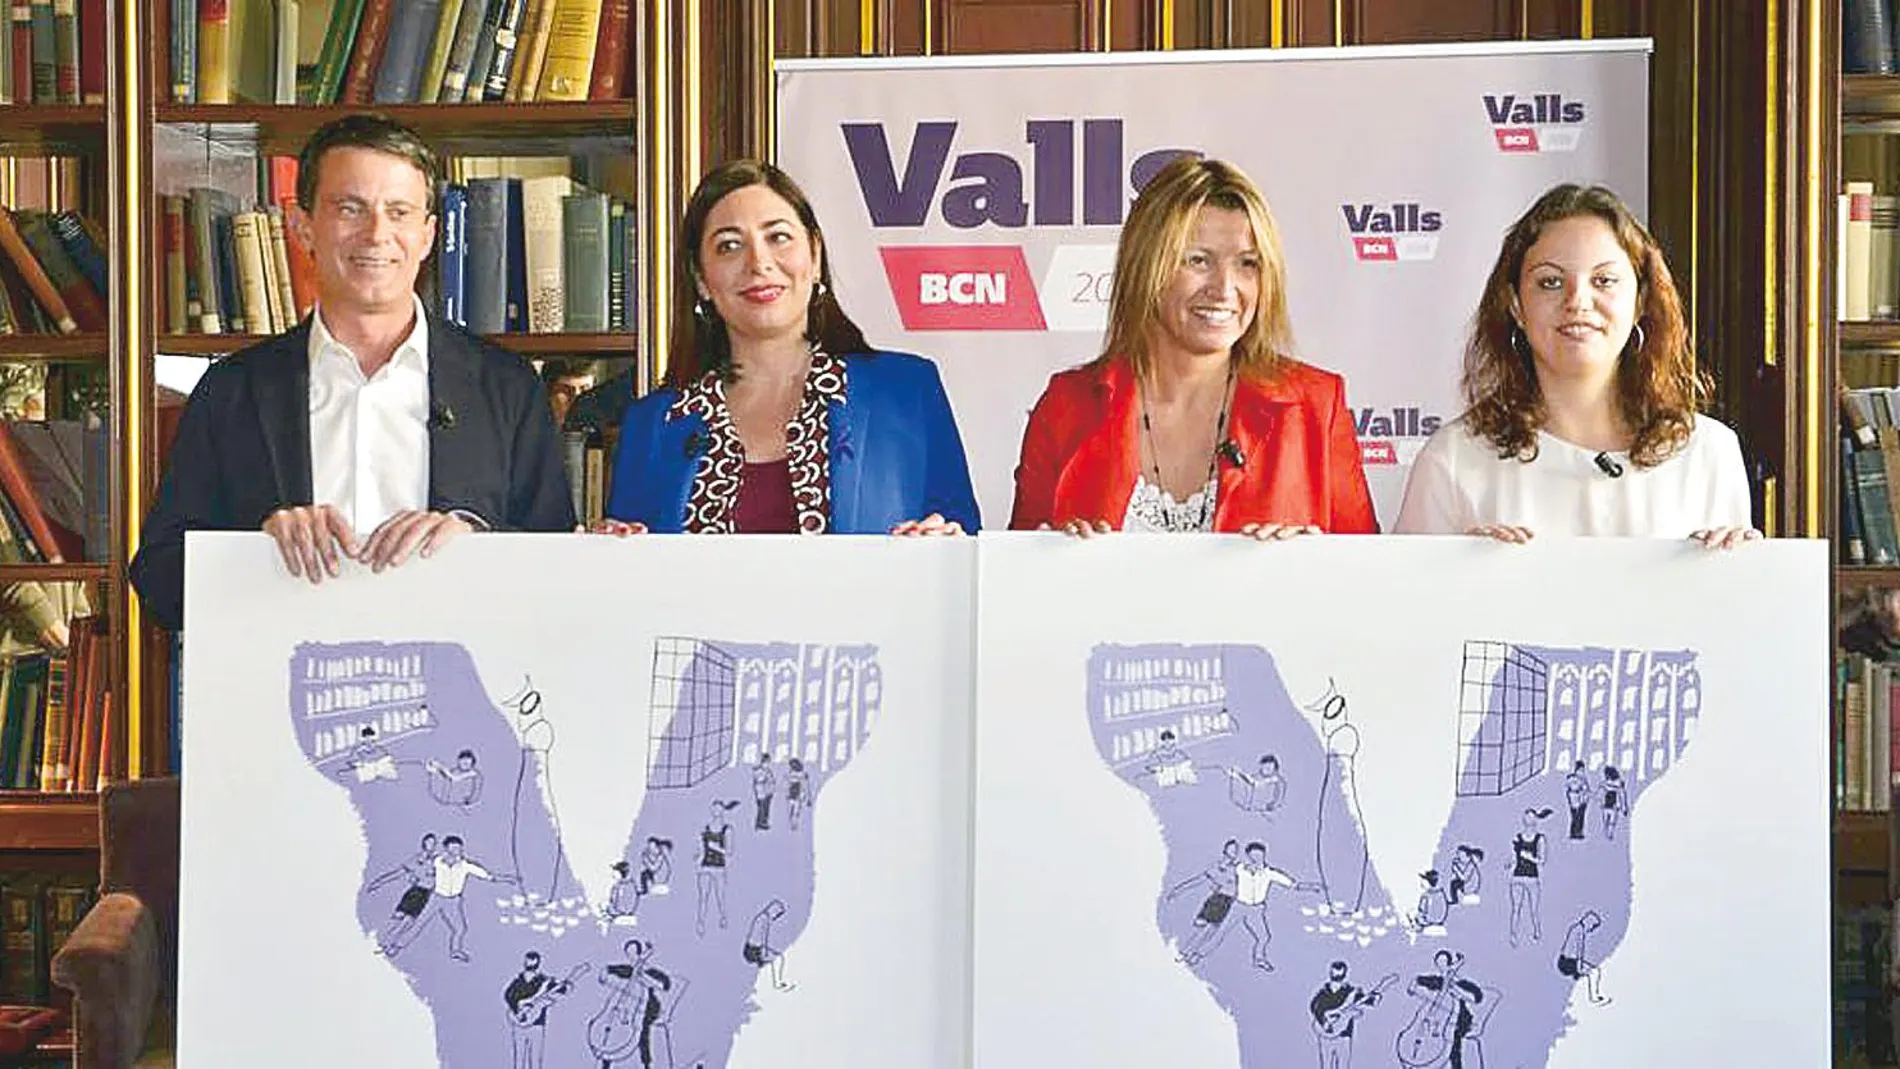 Manuel Valls anunciará durante los próximos días el resto de nombres que configurarán su lista electoral para el 26 de mayo